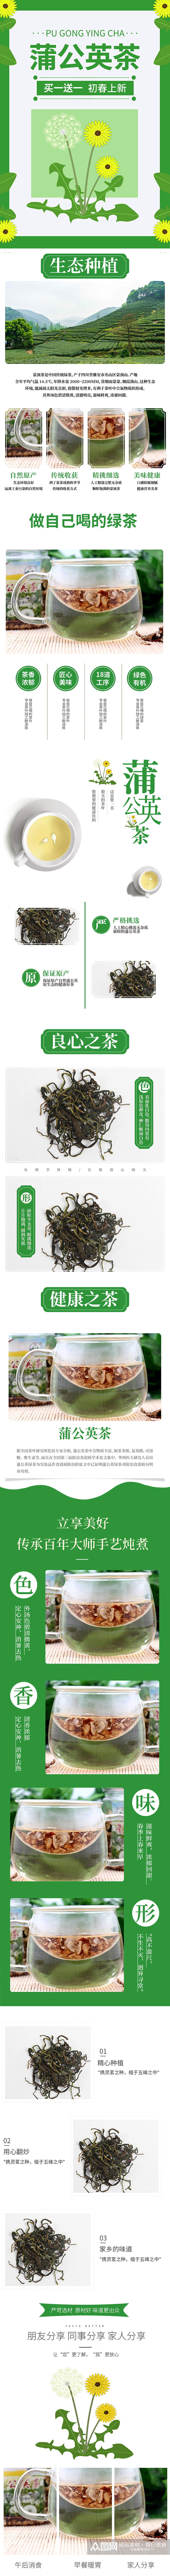 食品茶饮蒲公英茶绿茶茶叶详情页素材